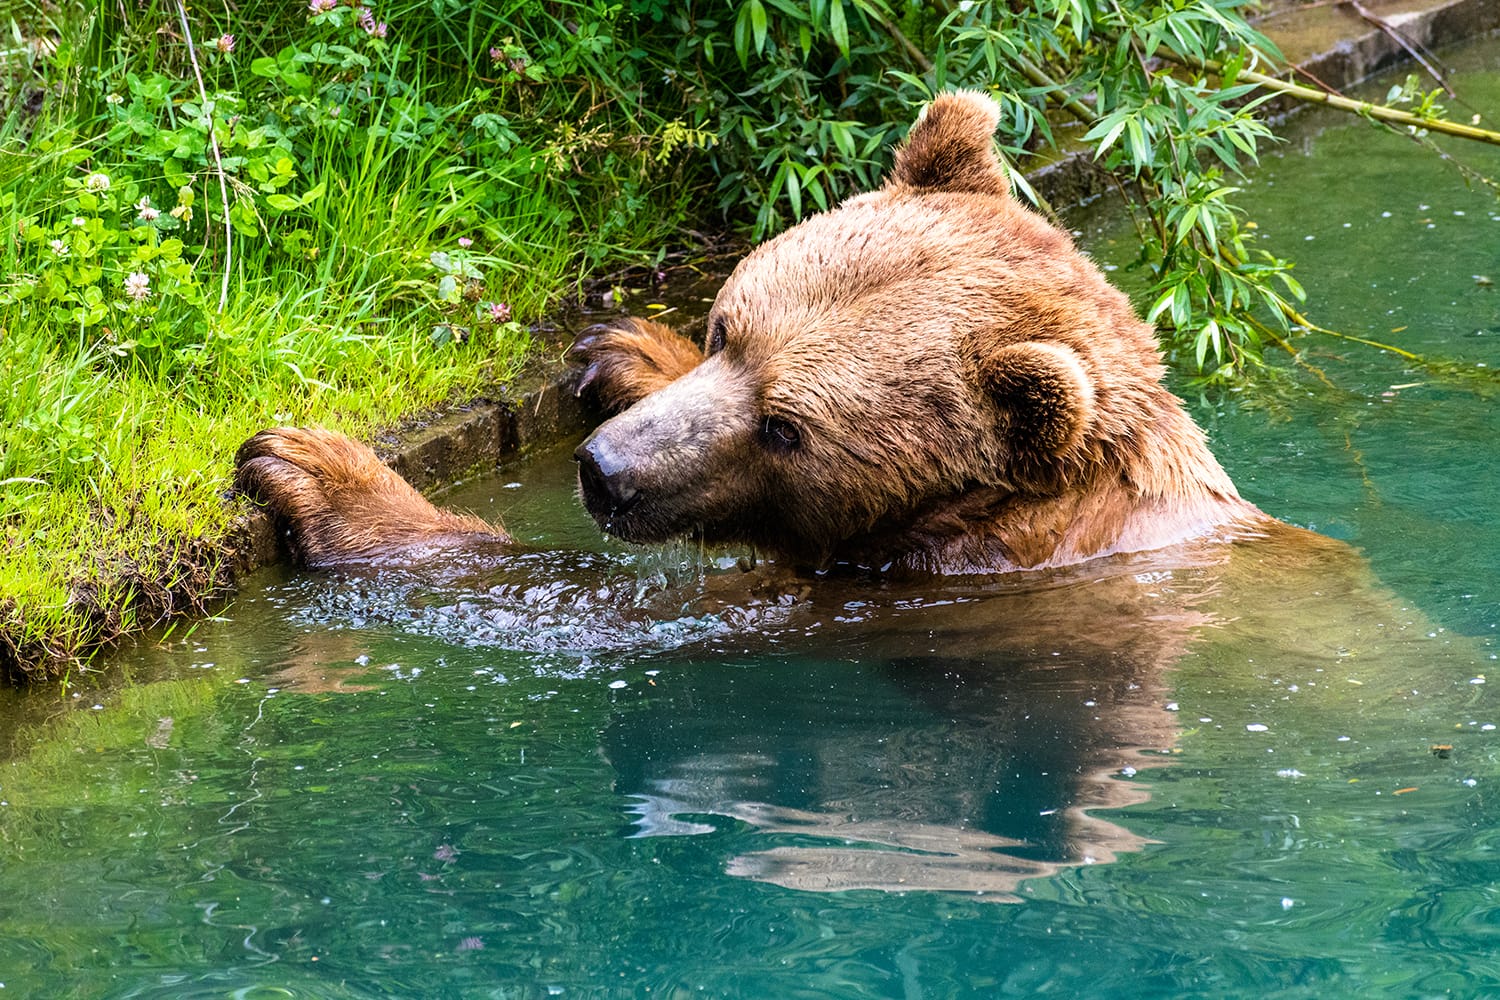 A bear swimming inside Bear Pit in Bern, Switzerland.